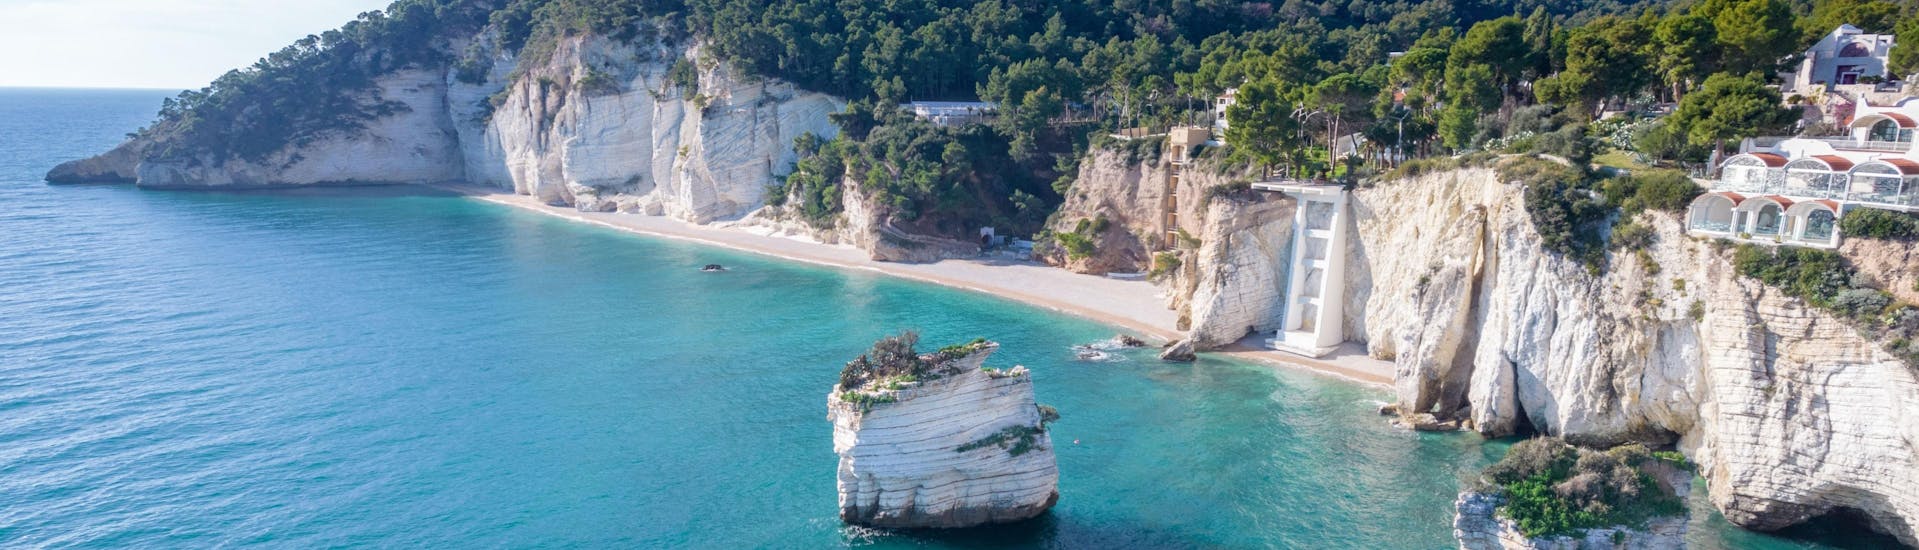 Blick auf den wunderschönen Strand von Baia delle Zagare, einem der beliebtesten Ziele für Bootstouren entlang der Küste des Gargano.